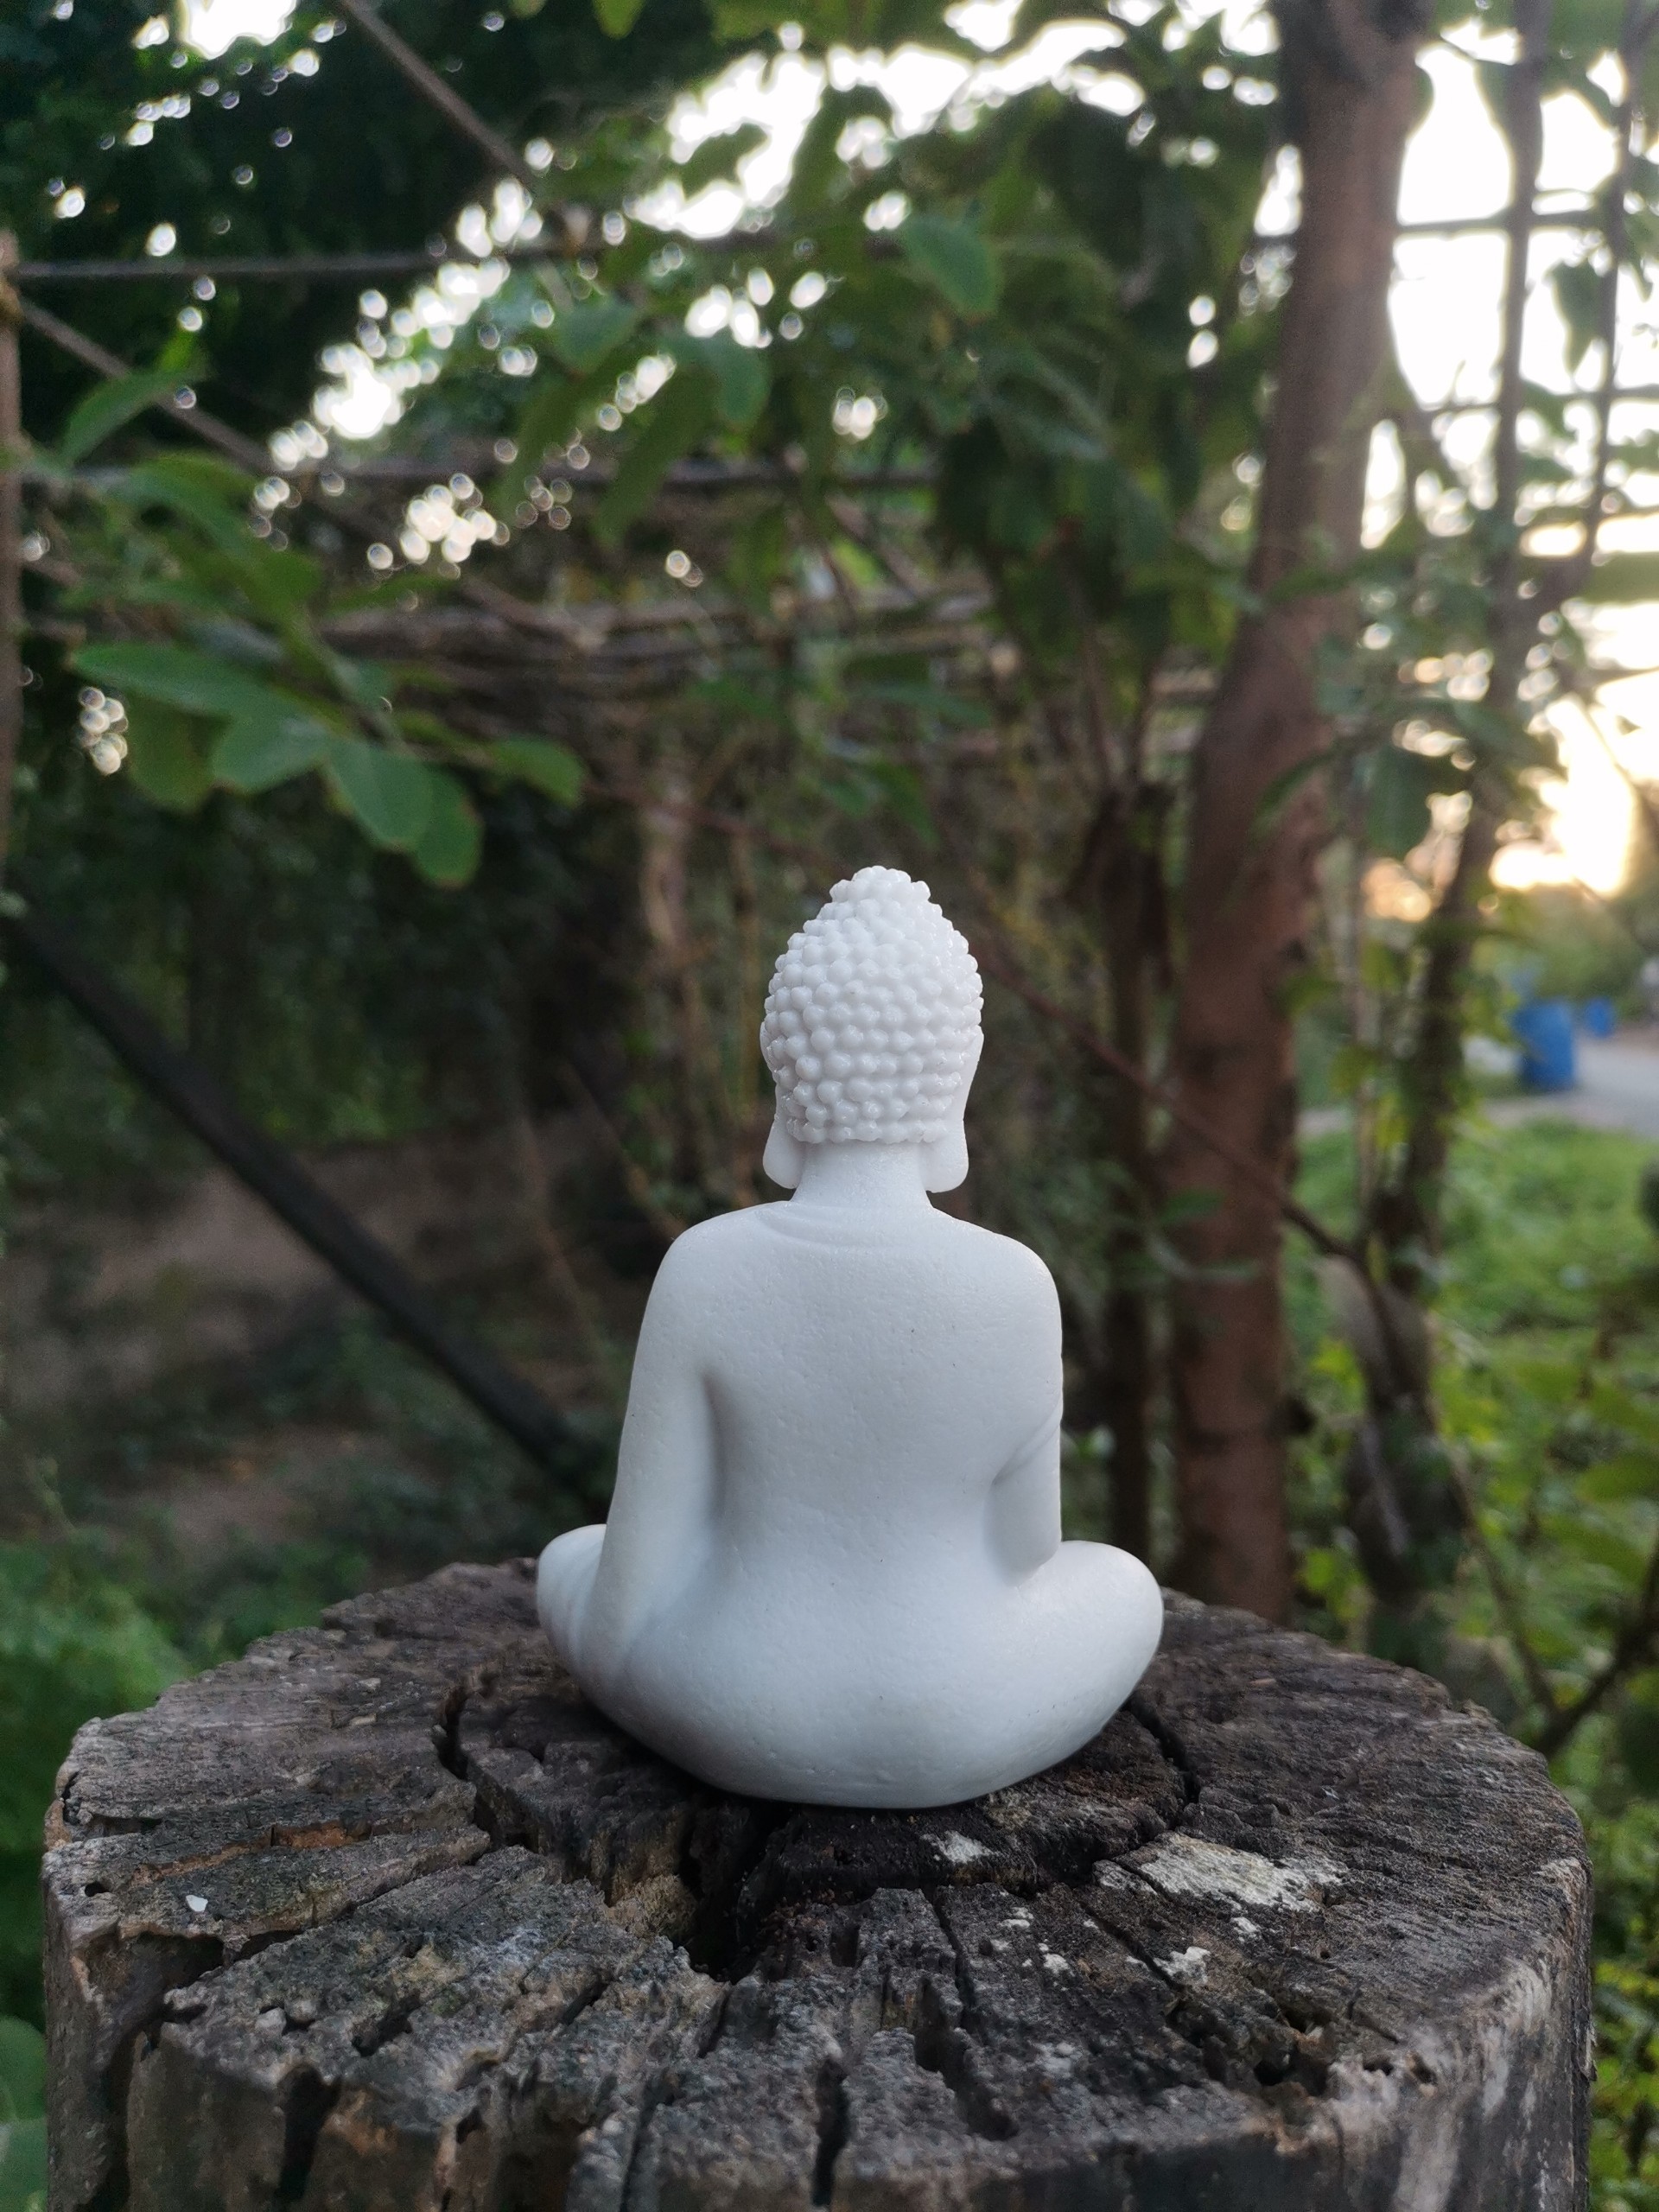 Tượng Đá Phật Thích Ca Cao 11cm màu trắng phong thủy, trang trí nhà cửa, thờ cúng